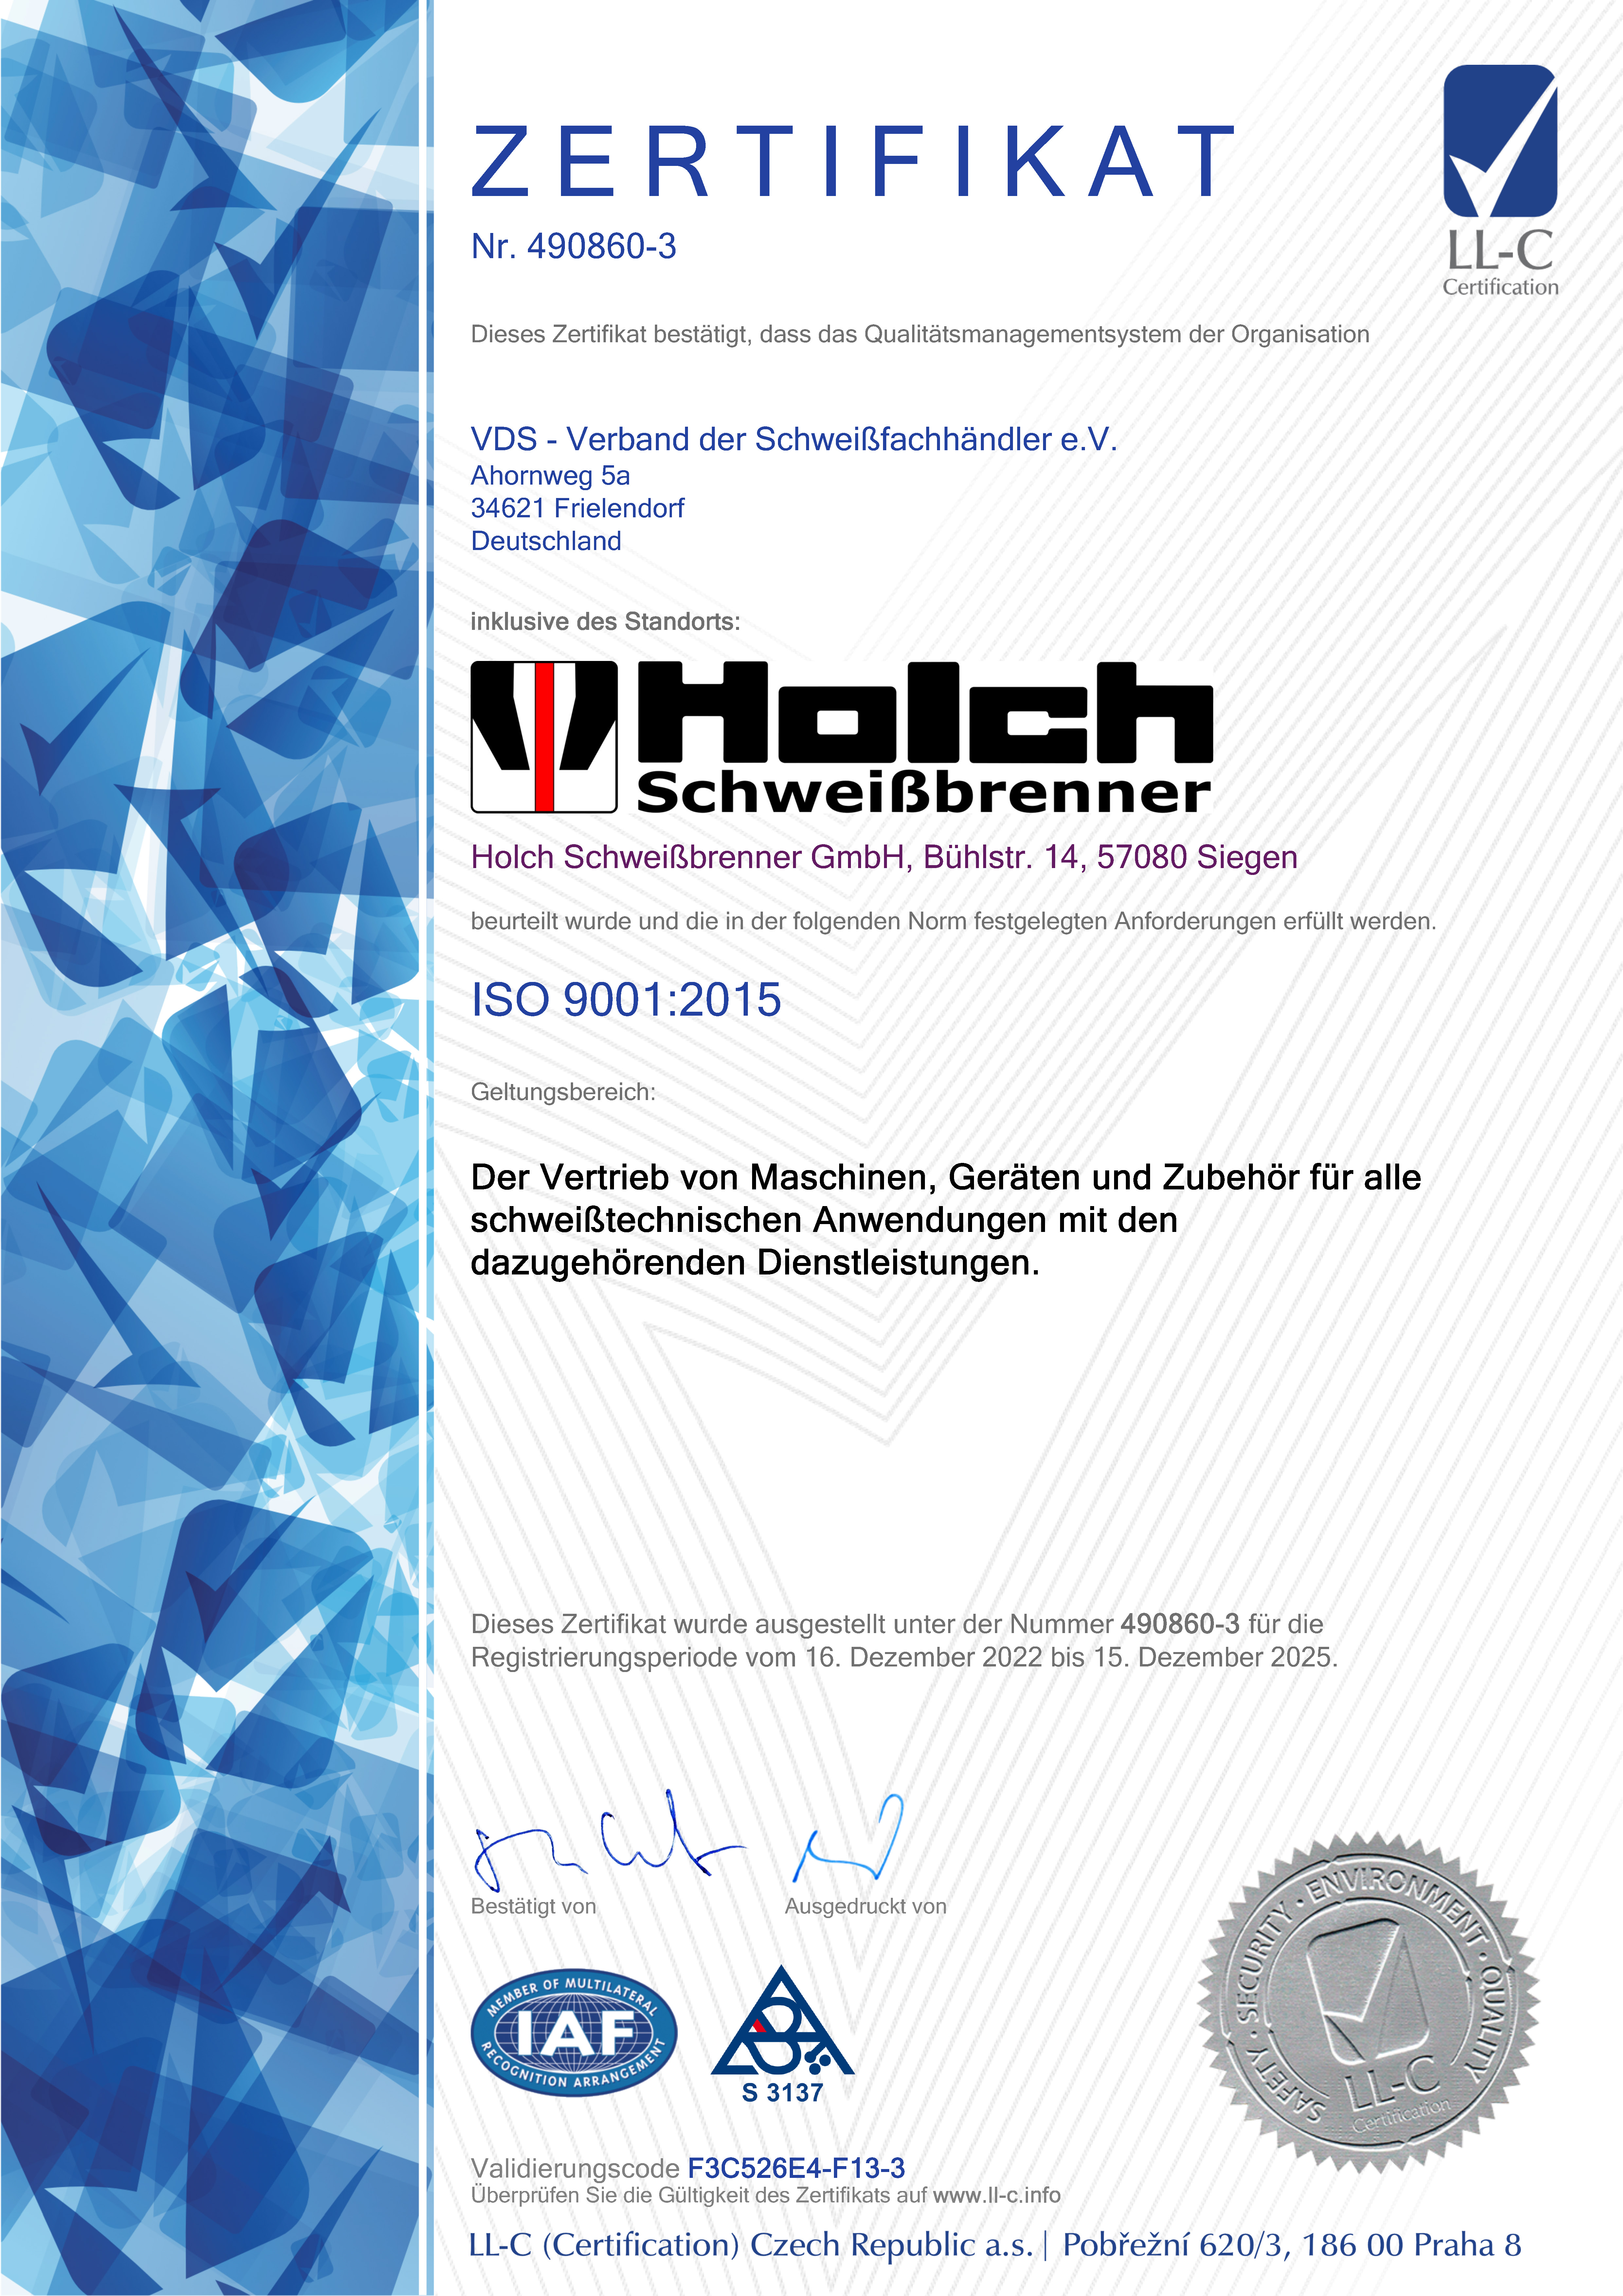 Zertifikat mit Holch Logo